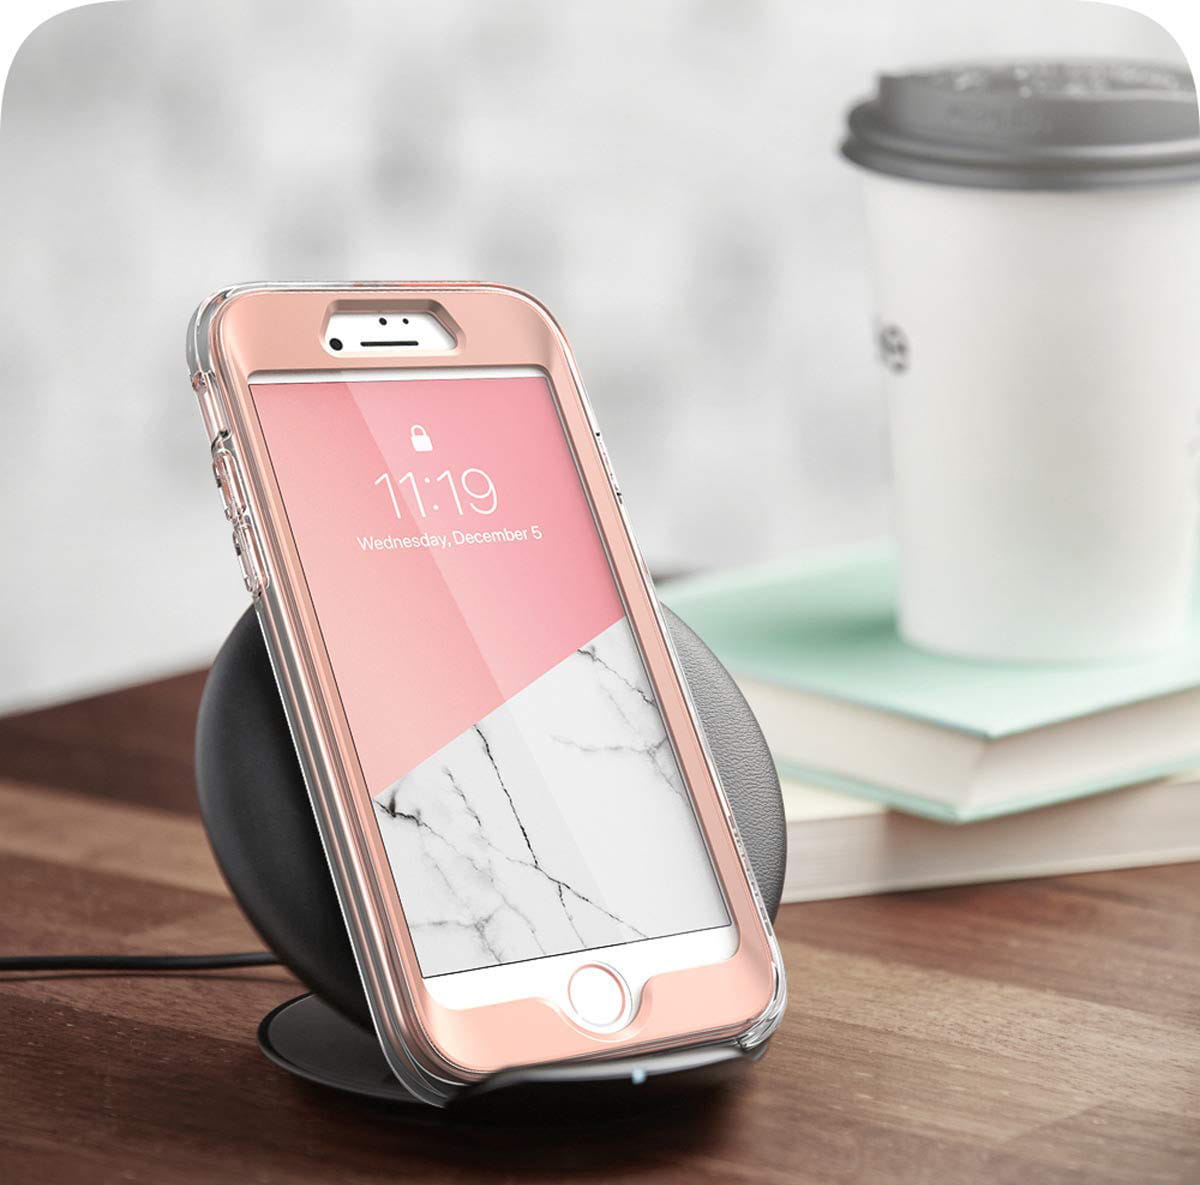 Gepanzerte Schutzhülle mit eingebautem Displayschutz Supcase i-Blason Cosmo für iPhone SE 2020, 8/7, rosa.